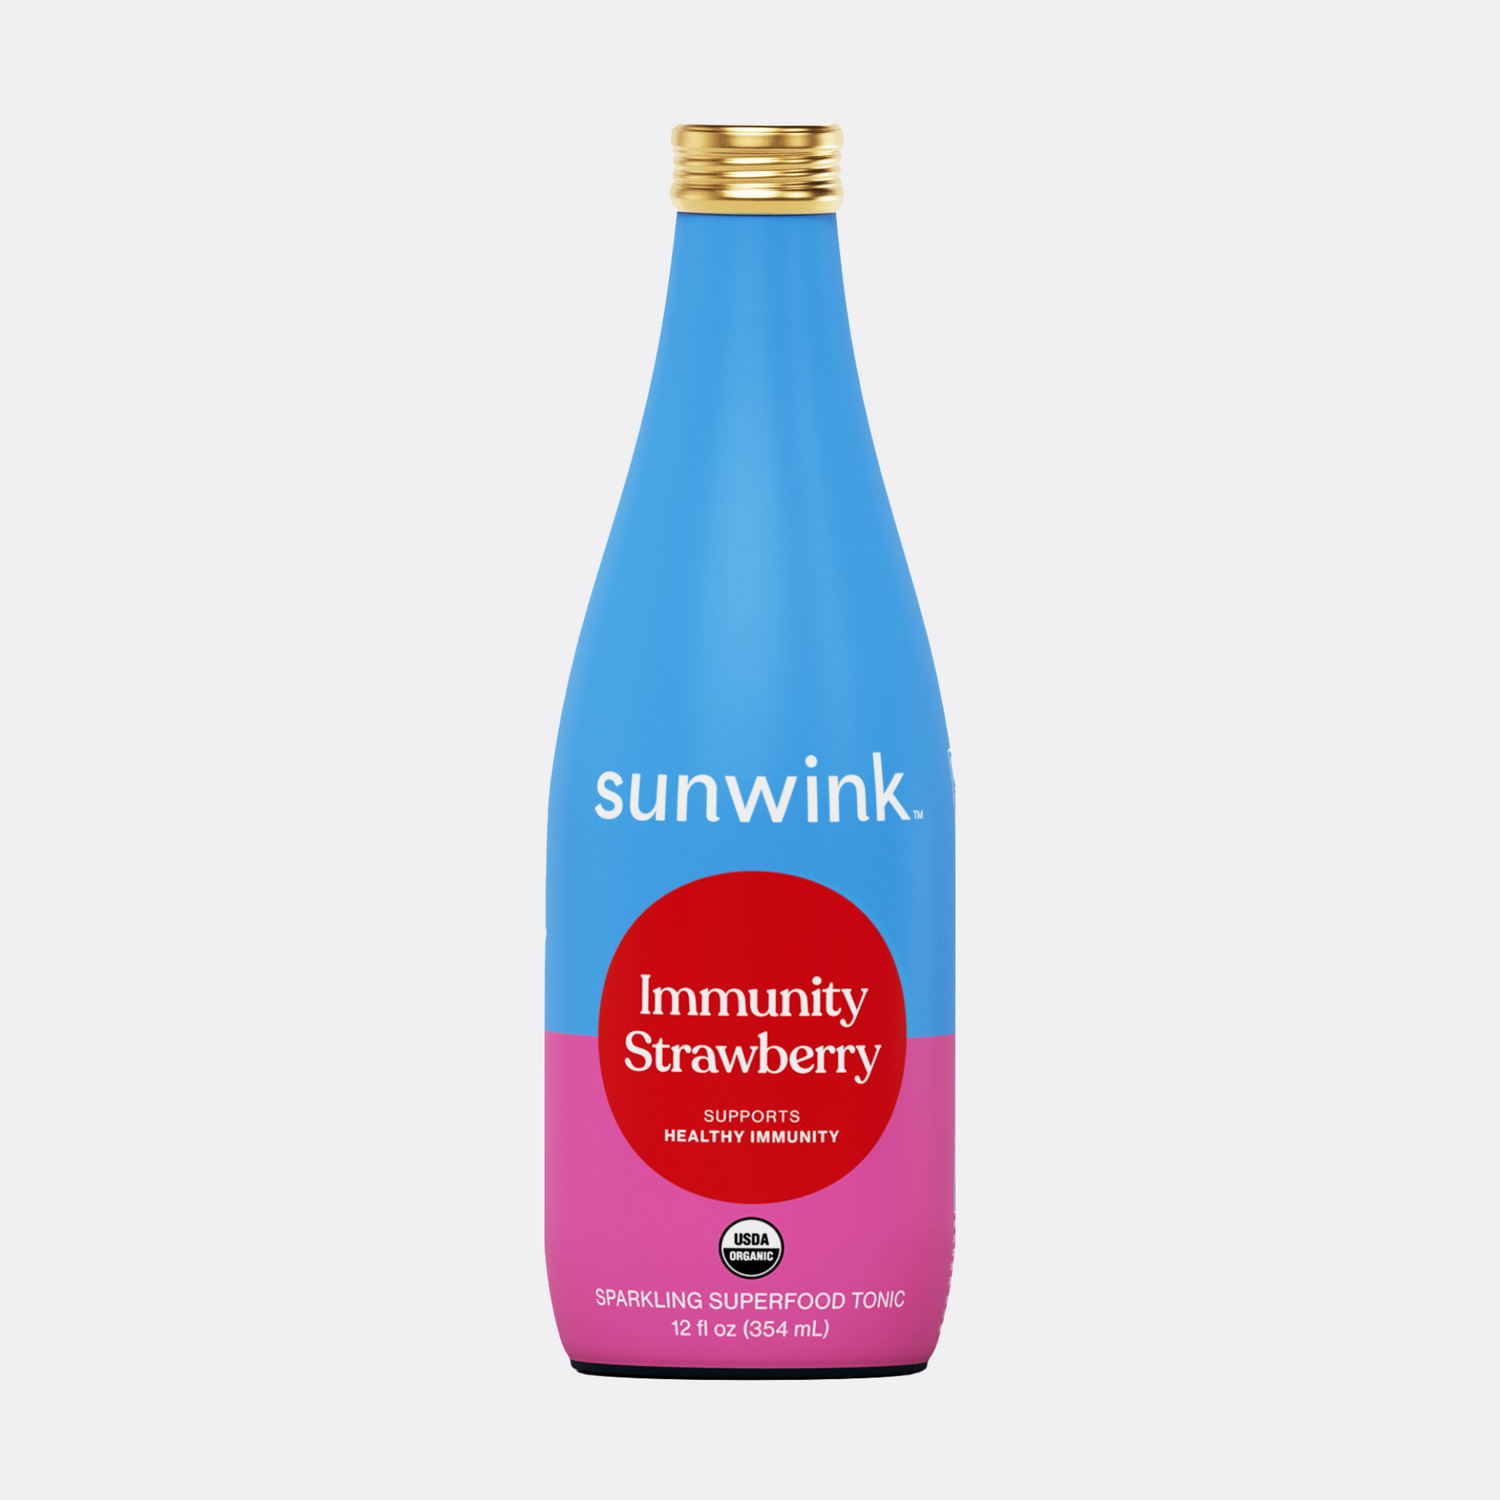 Sunwink Tonic Flavors